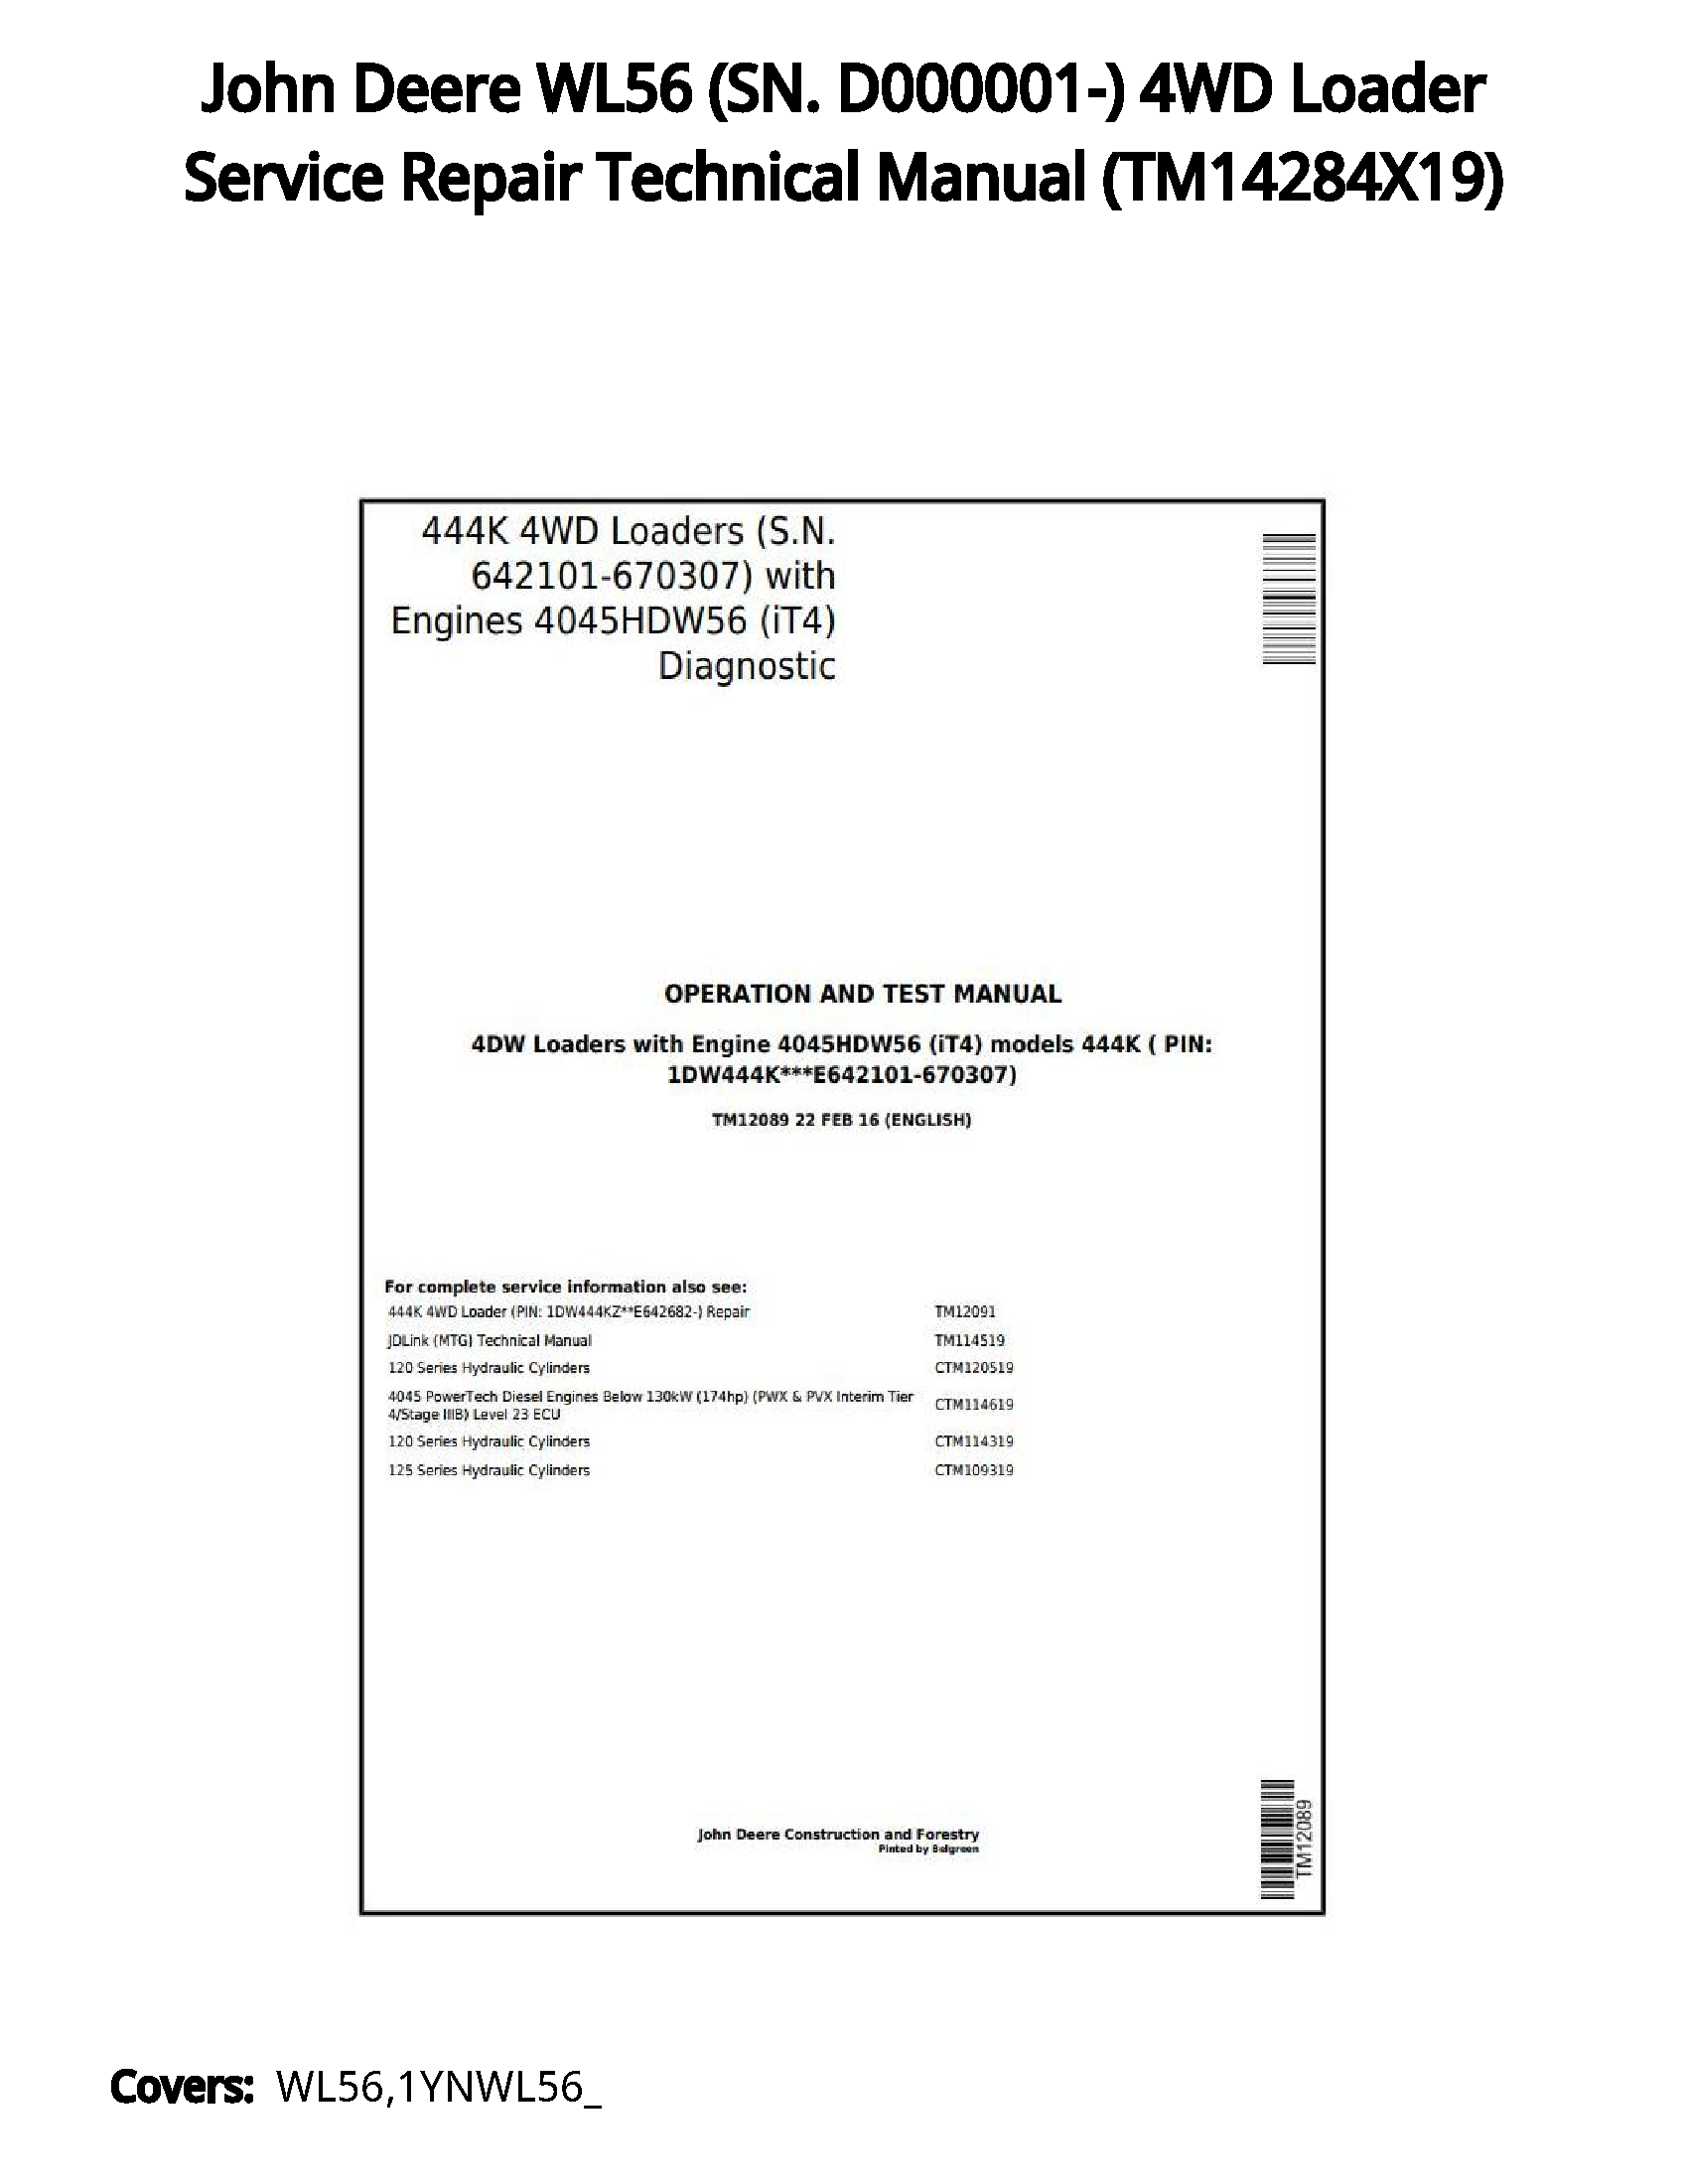 John Deere WL56 (SN. D000001-) 4WD Loader Service Repair Technical Manual - TM14284X19